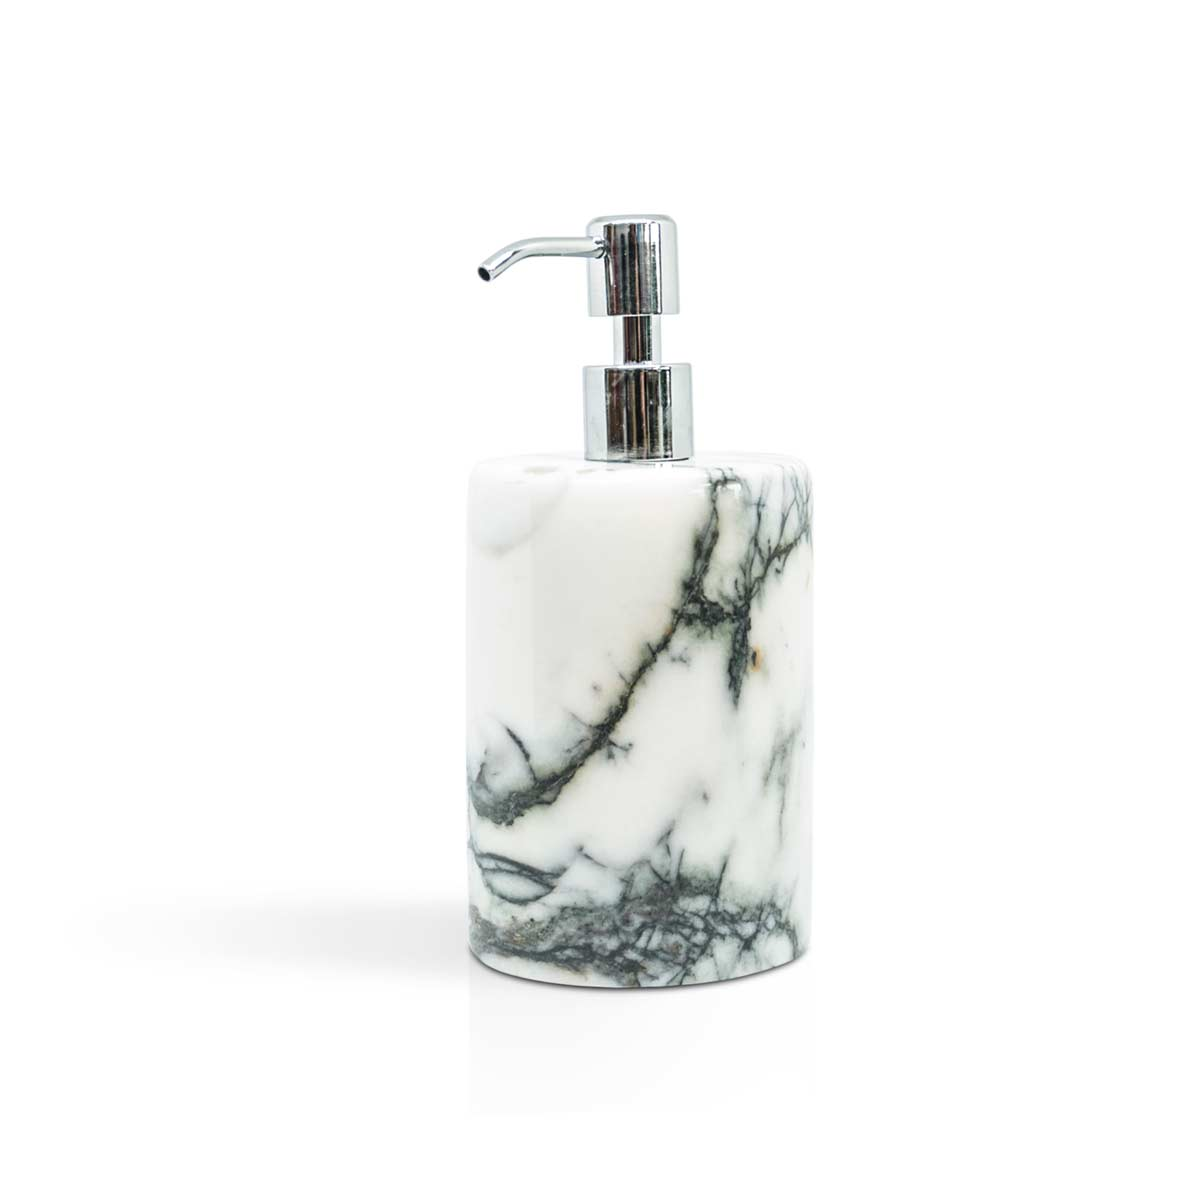 FiammettaV collezione Rounded dispenser sapone in marmo Paonazzo